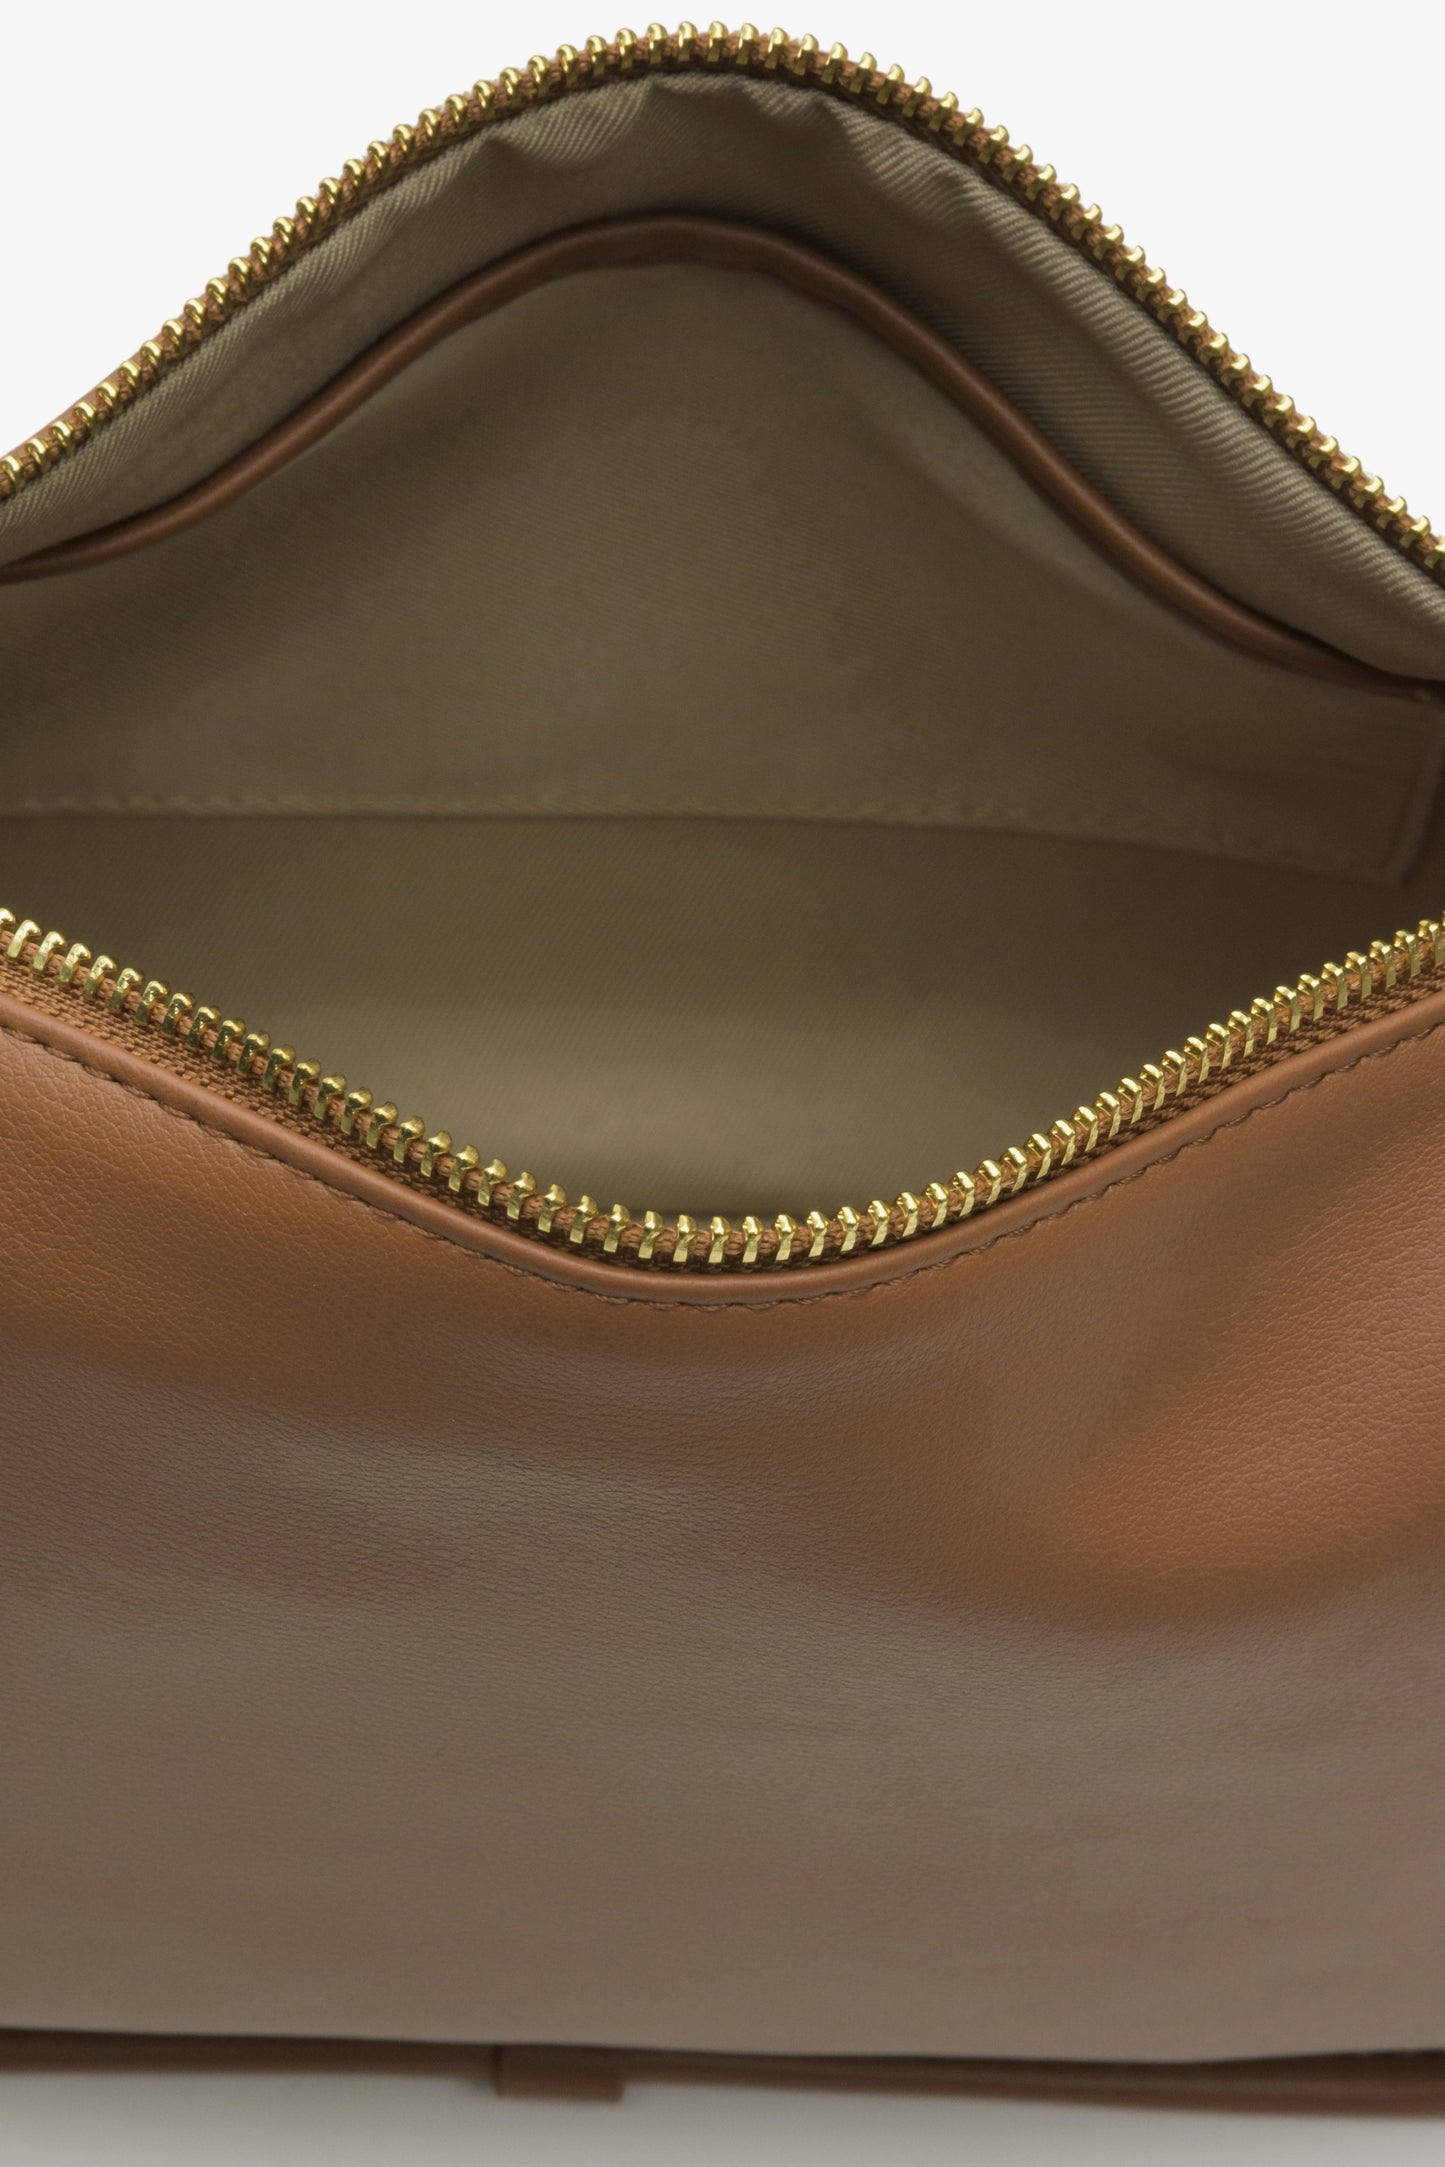 Skórzana brązowa torebka damska na ramię Estro - zbliżenie do wnętrza modelu.